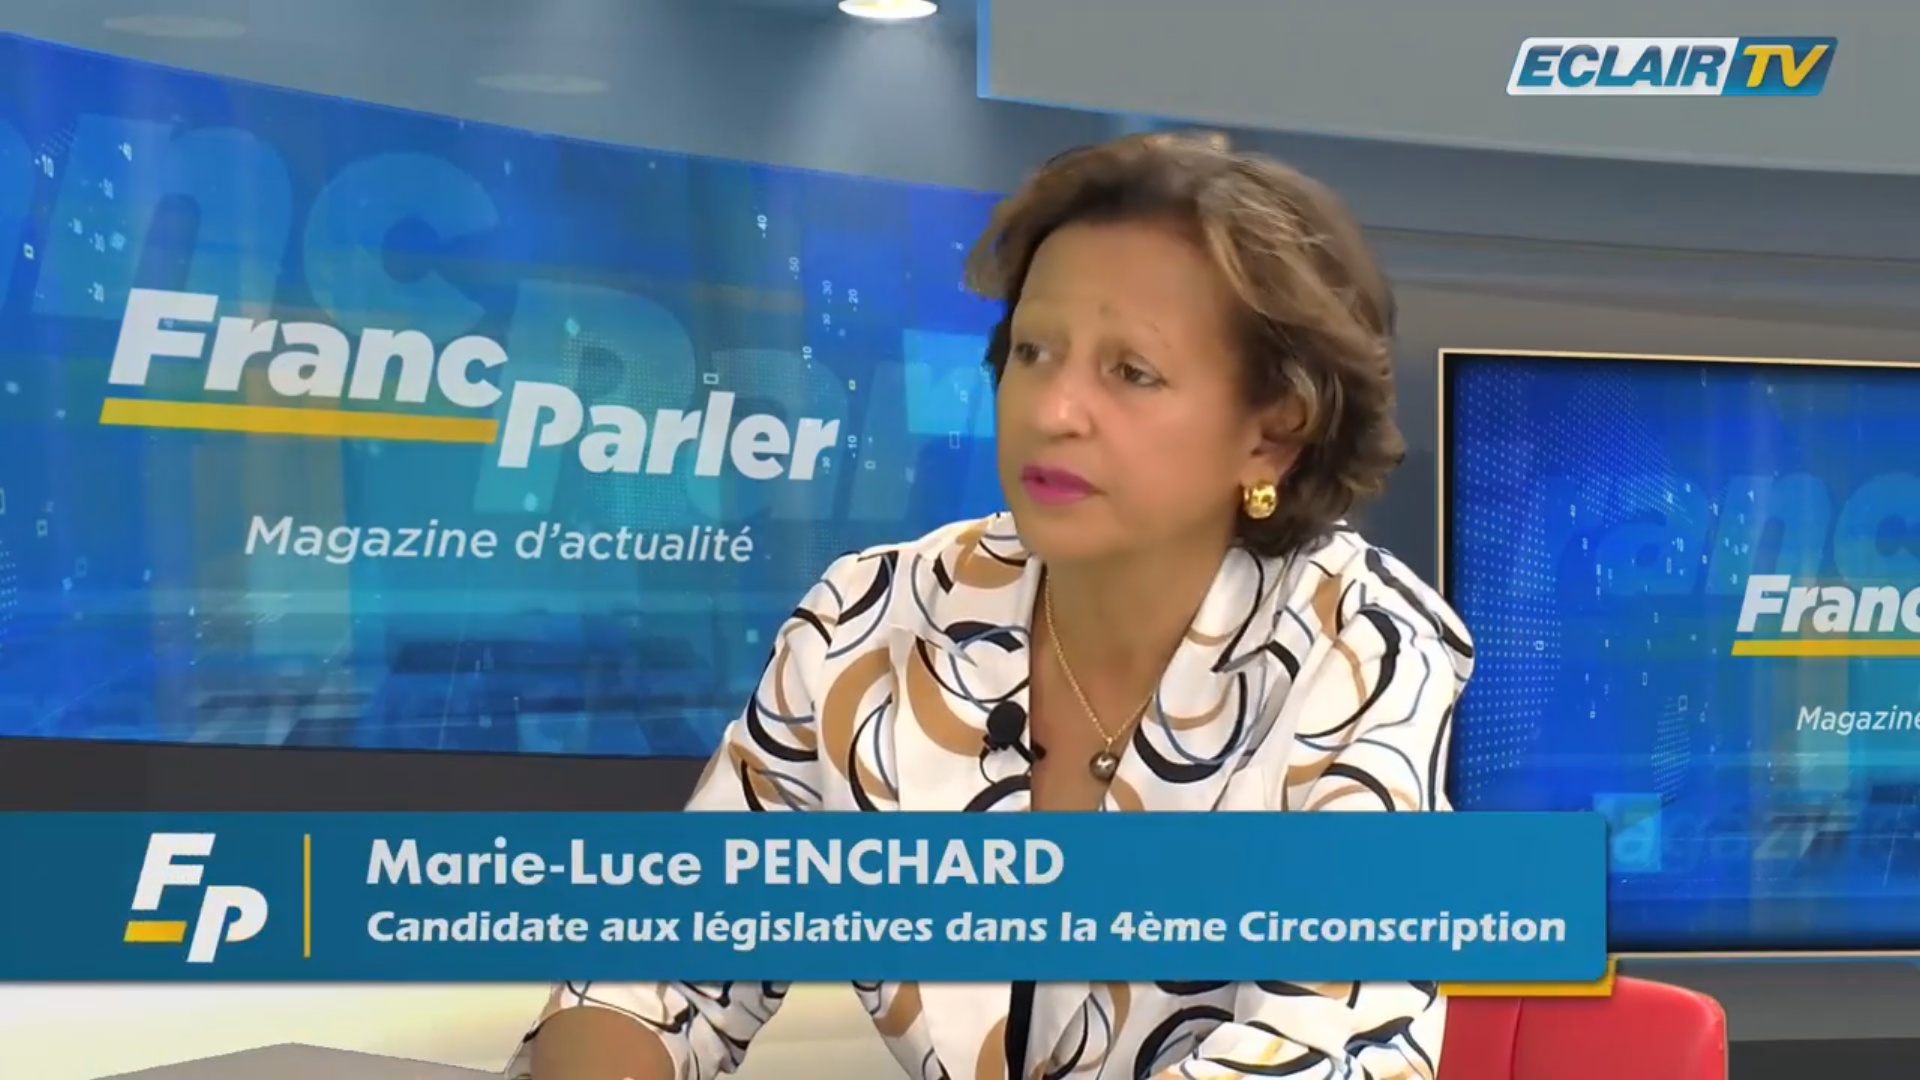 [Vidéo] Guadeloupe. Législatives. Marie Luce PENCHARD Candidate dans la 4ème circonscription (Eclair TV)